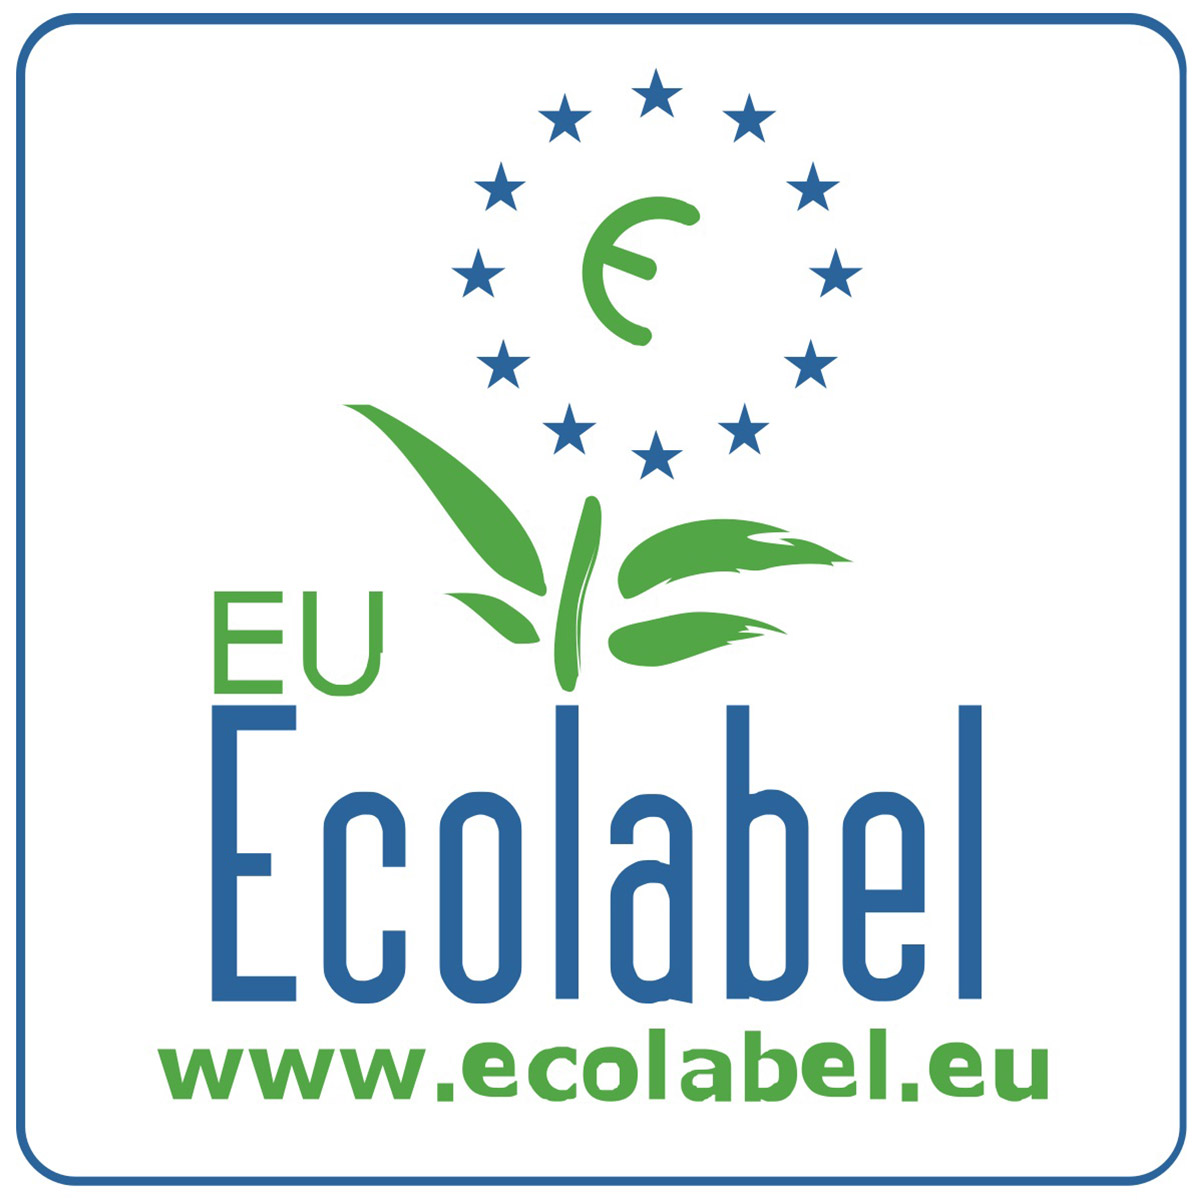 Ecolabel certifikat za papirnate brisače